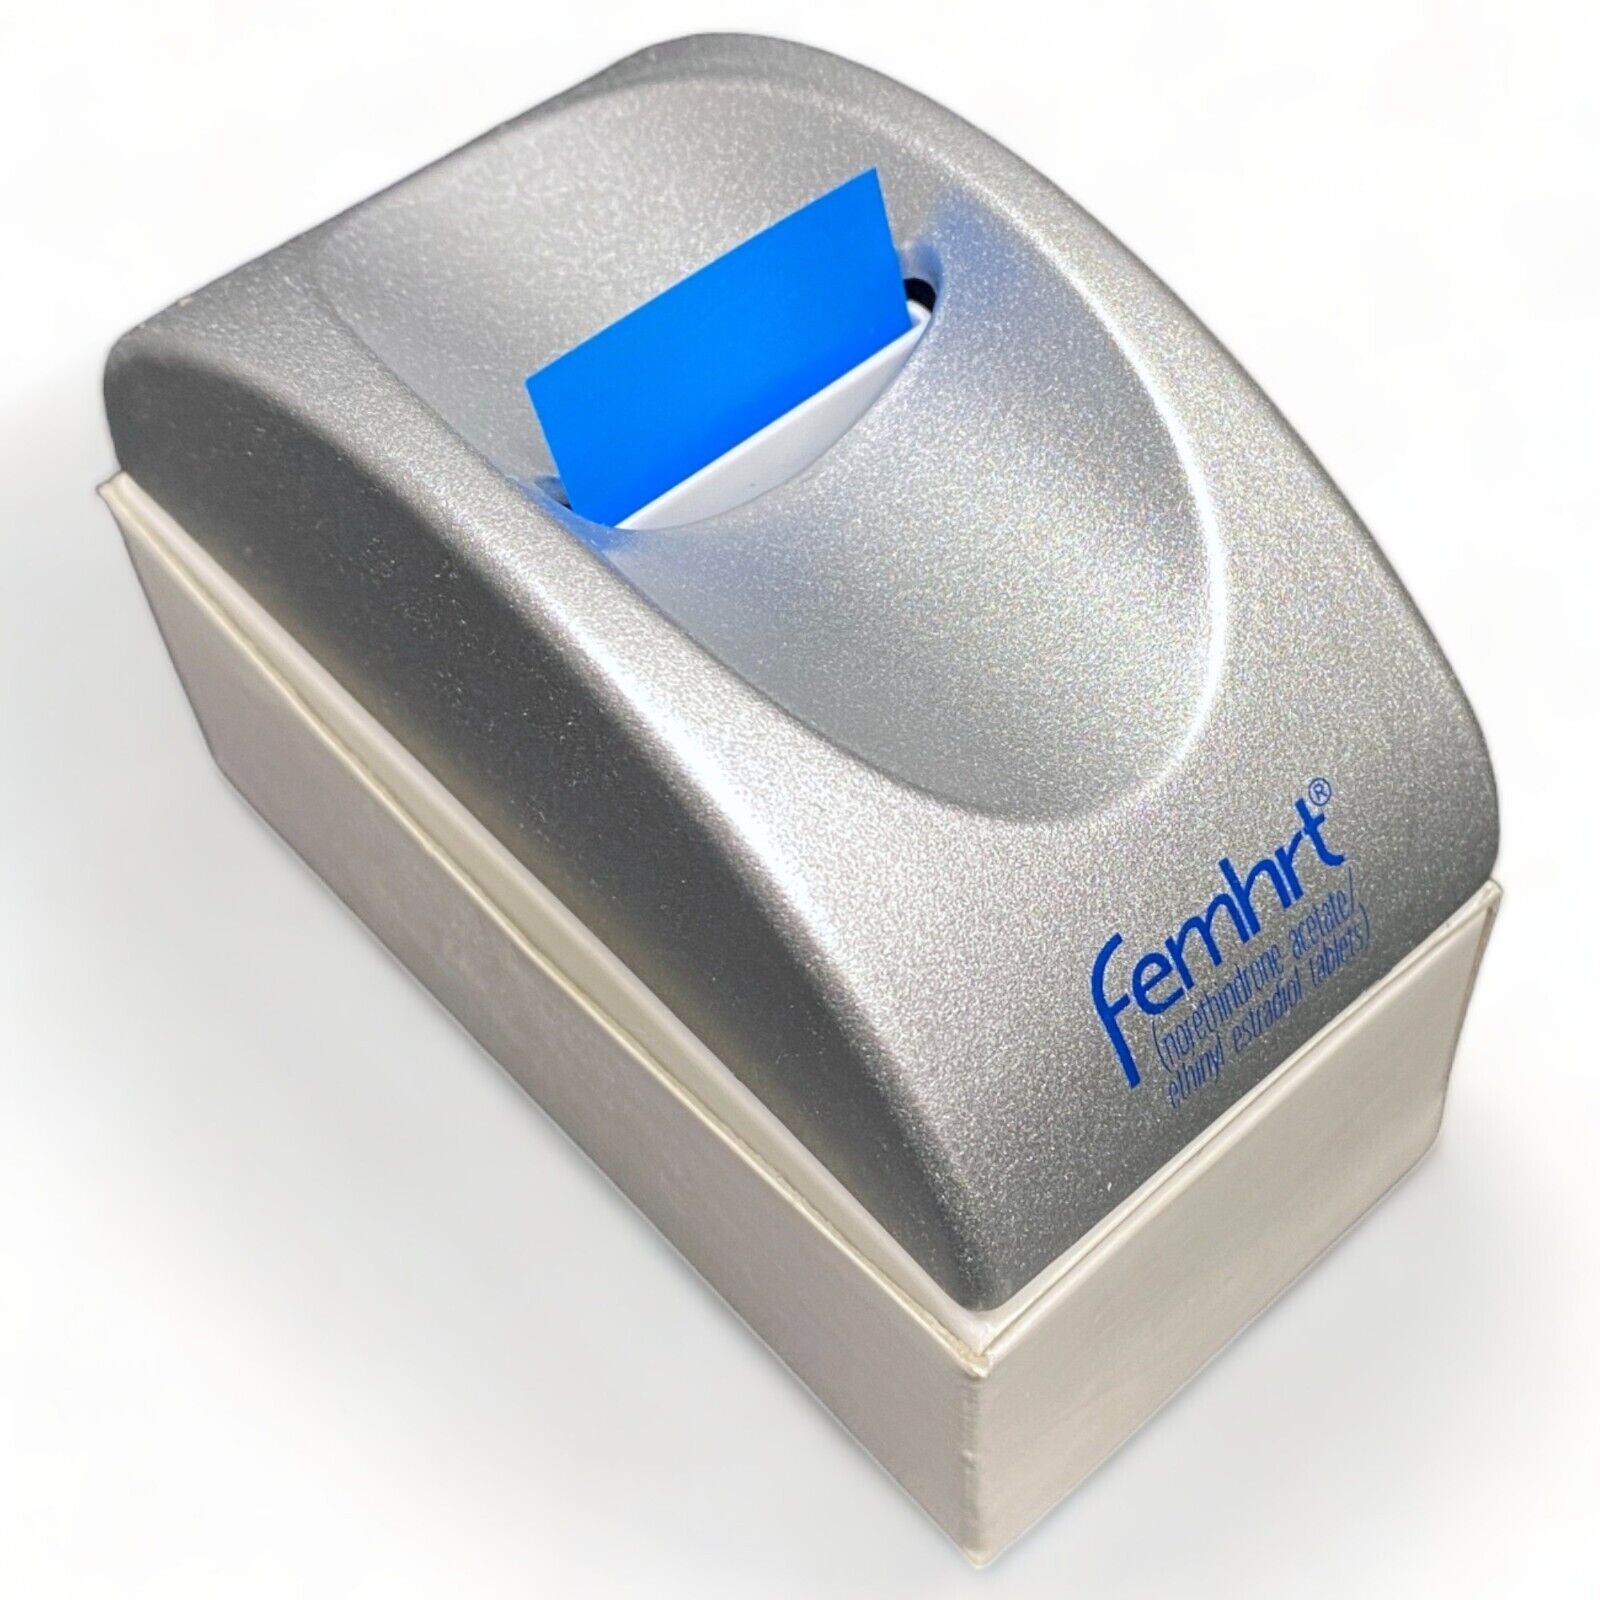 FEMHRT Pharmaceutical Drug Rep Office Desk Post-It Dispenser RARE VINTAGE NIB